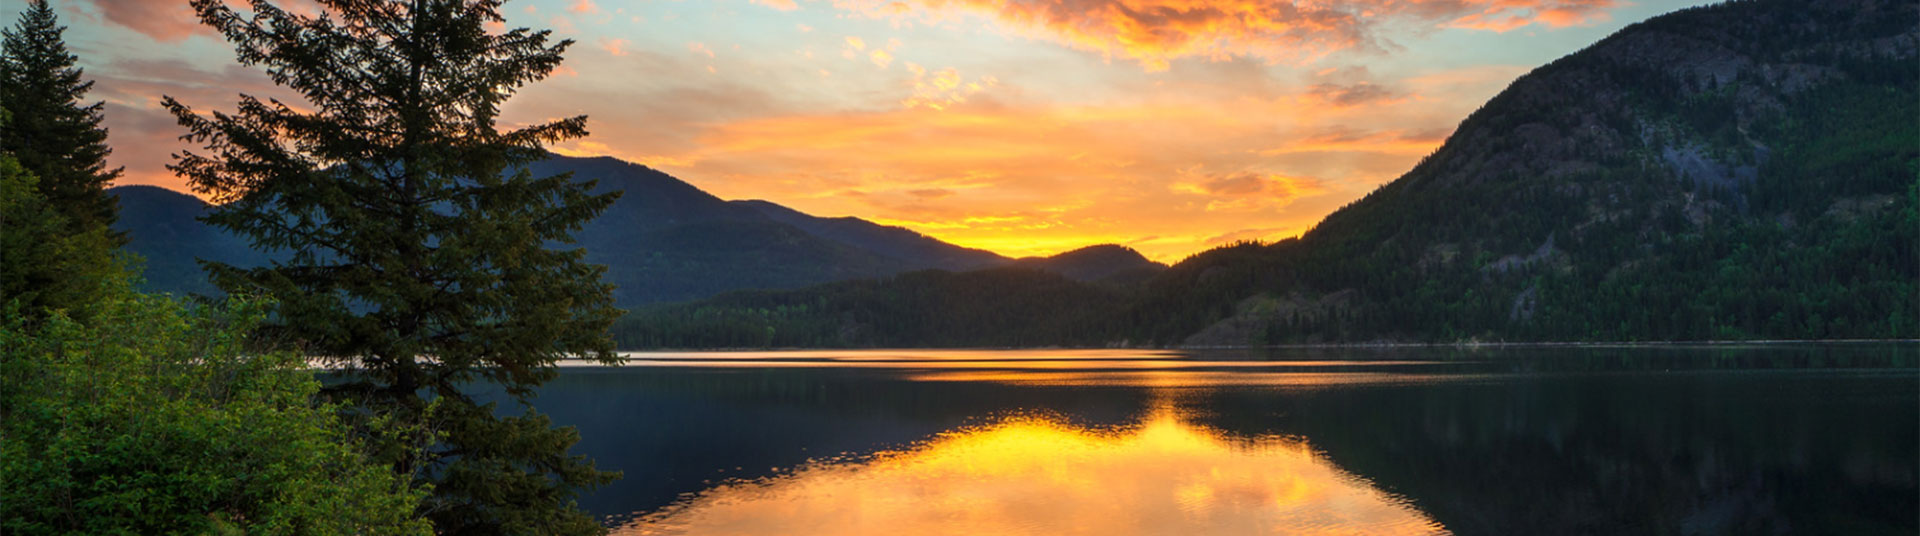 hero image-sunrise over lake